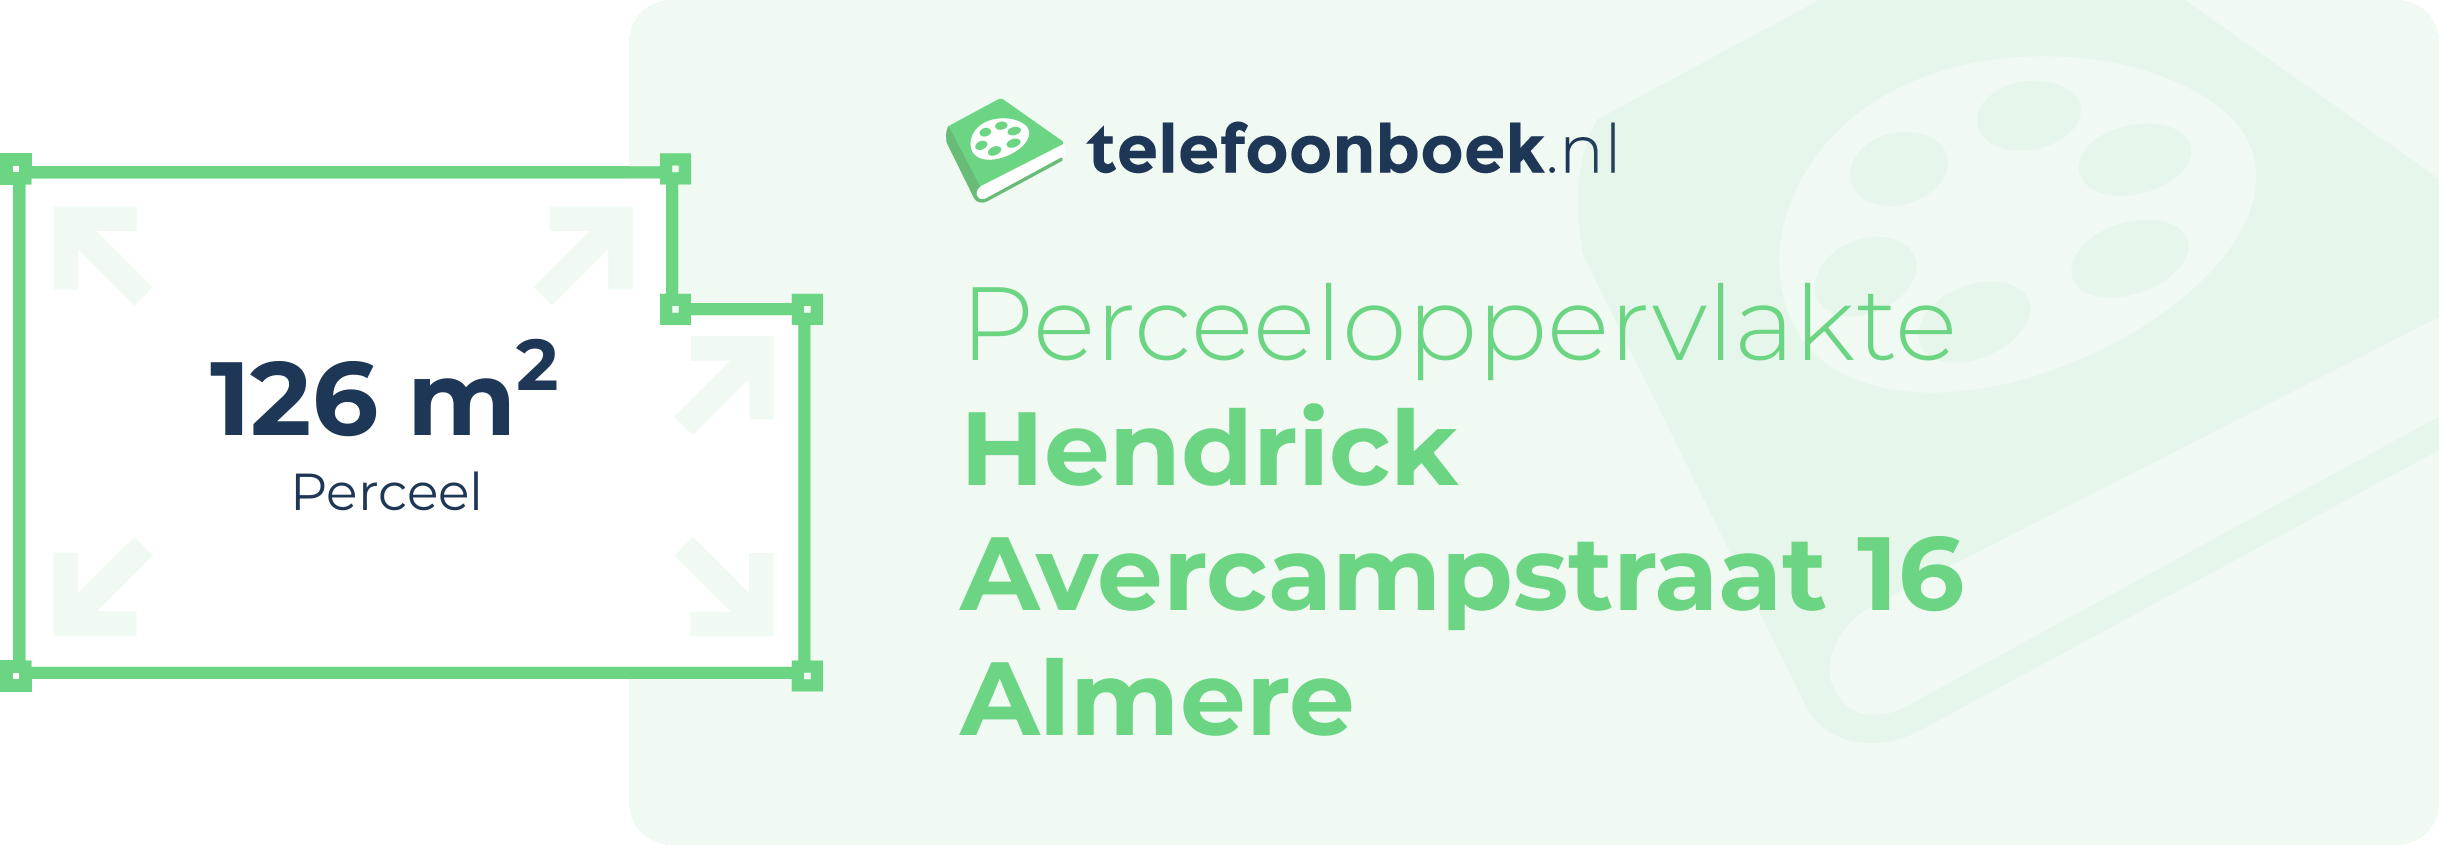 Perceeloppervlakte Hendrick Avercampstraat 16 Almere